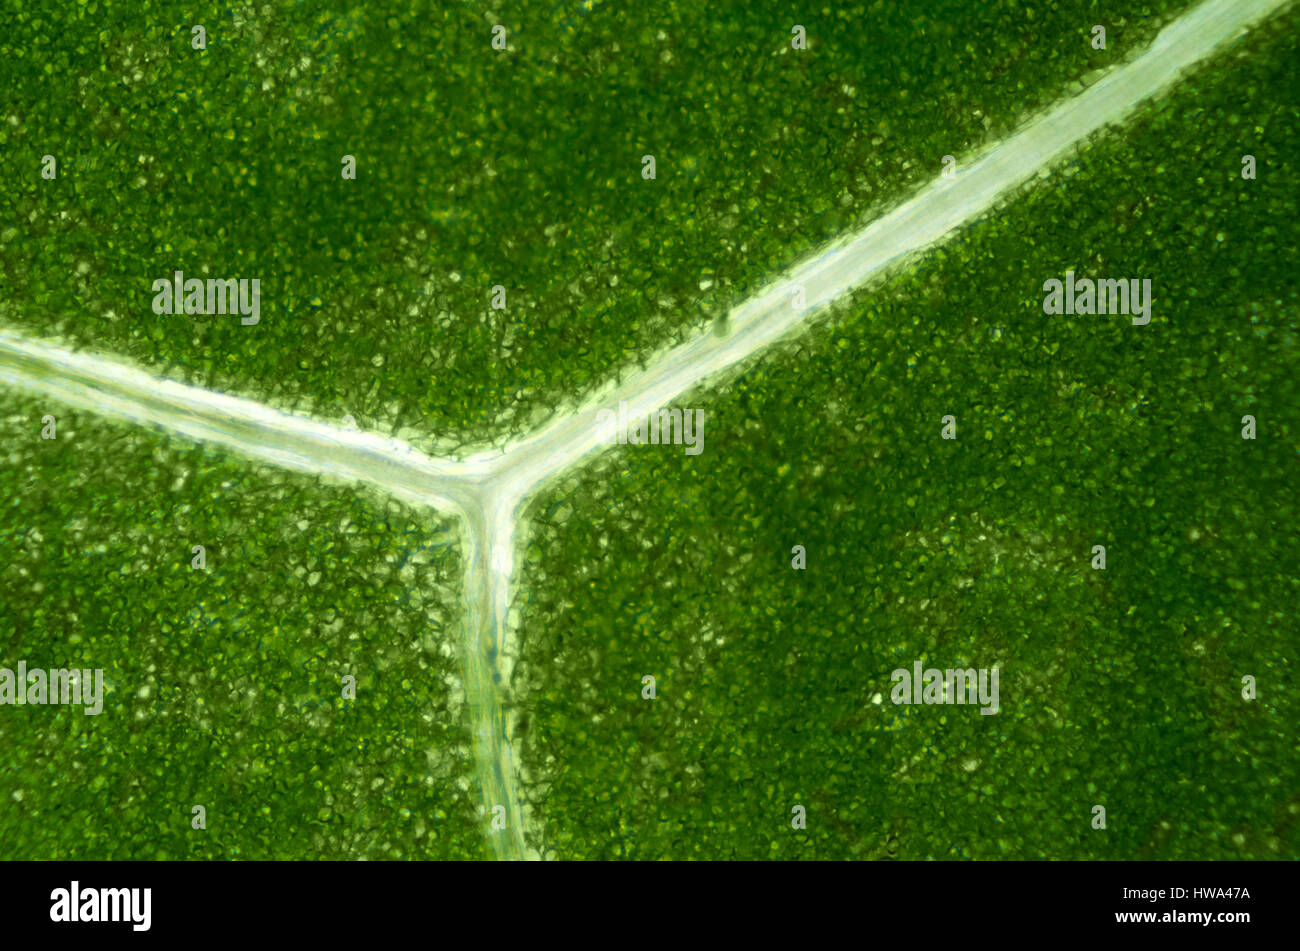 Lettuce leaf bajo la luz del microscopio. Detalle de una hoja con Batavia verde cloroplastos y translúcidas venas ramificadas. Macro Fotografía de alimentos cerca. Foto de stock